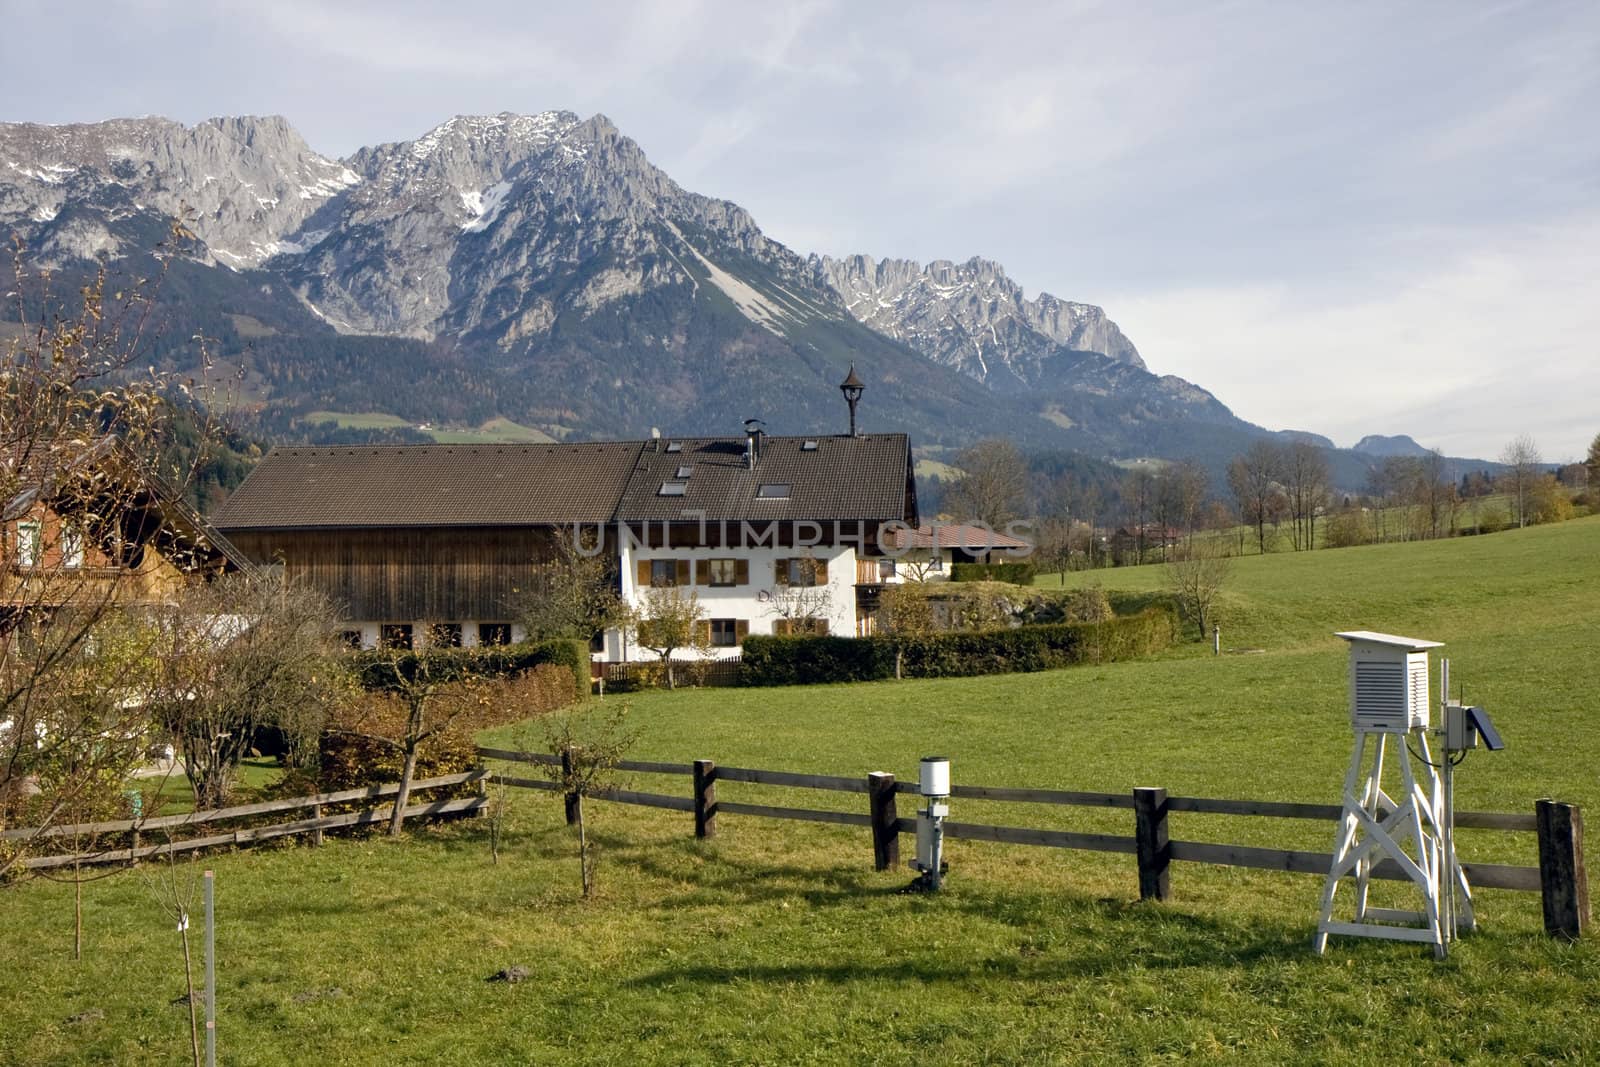 Village in Austria  by evgeshag